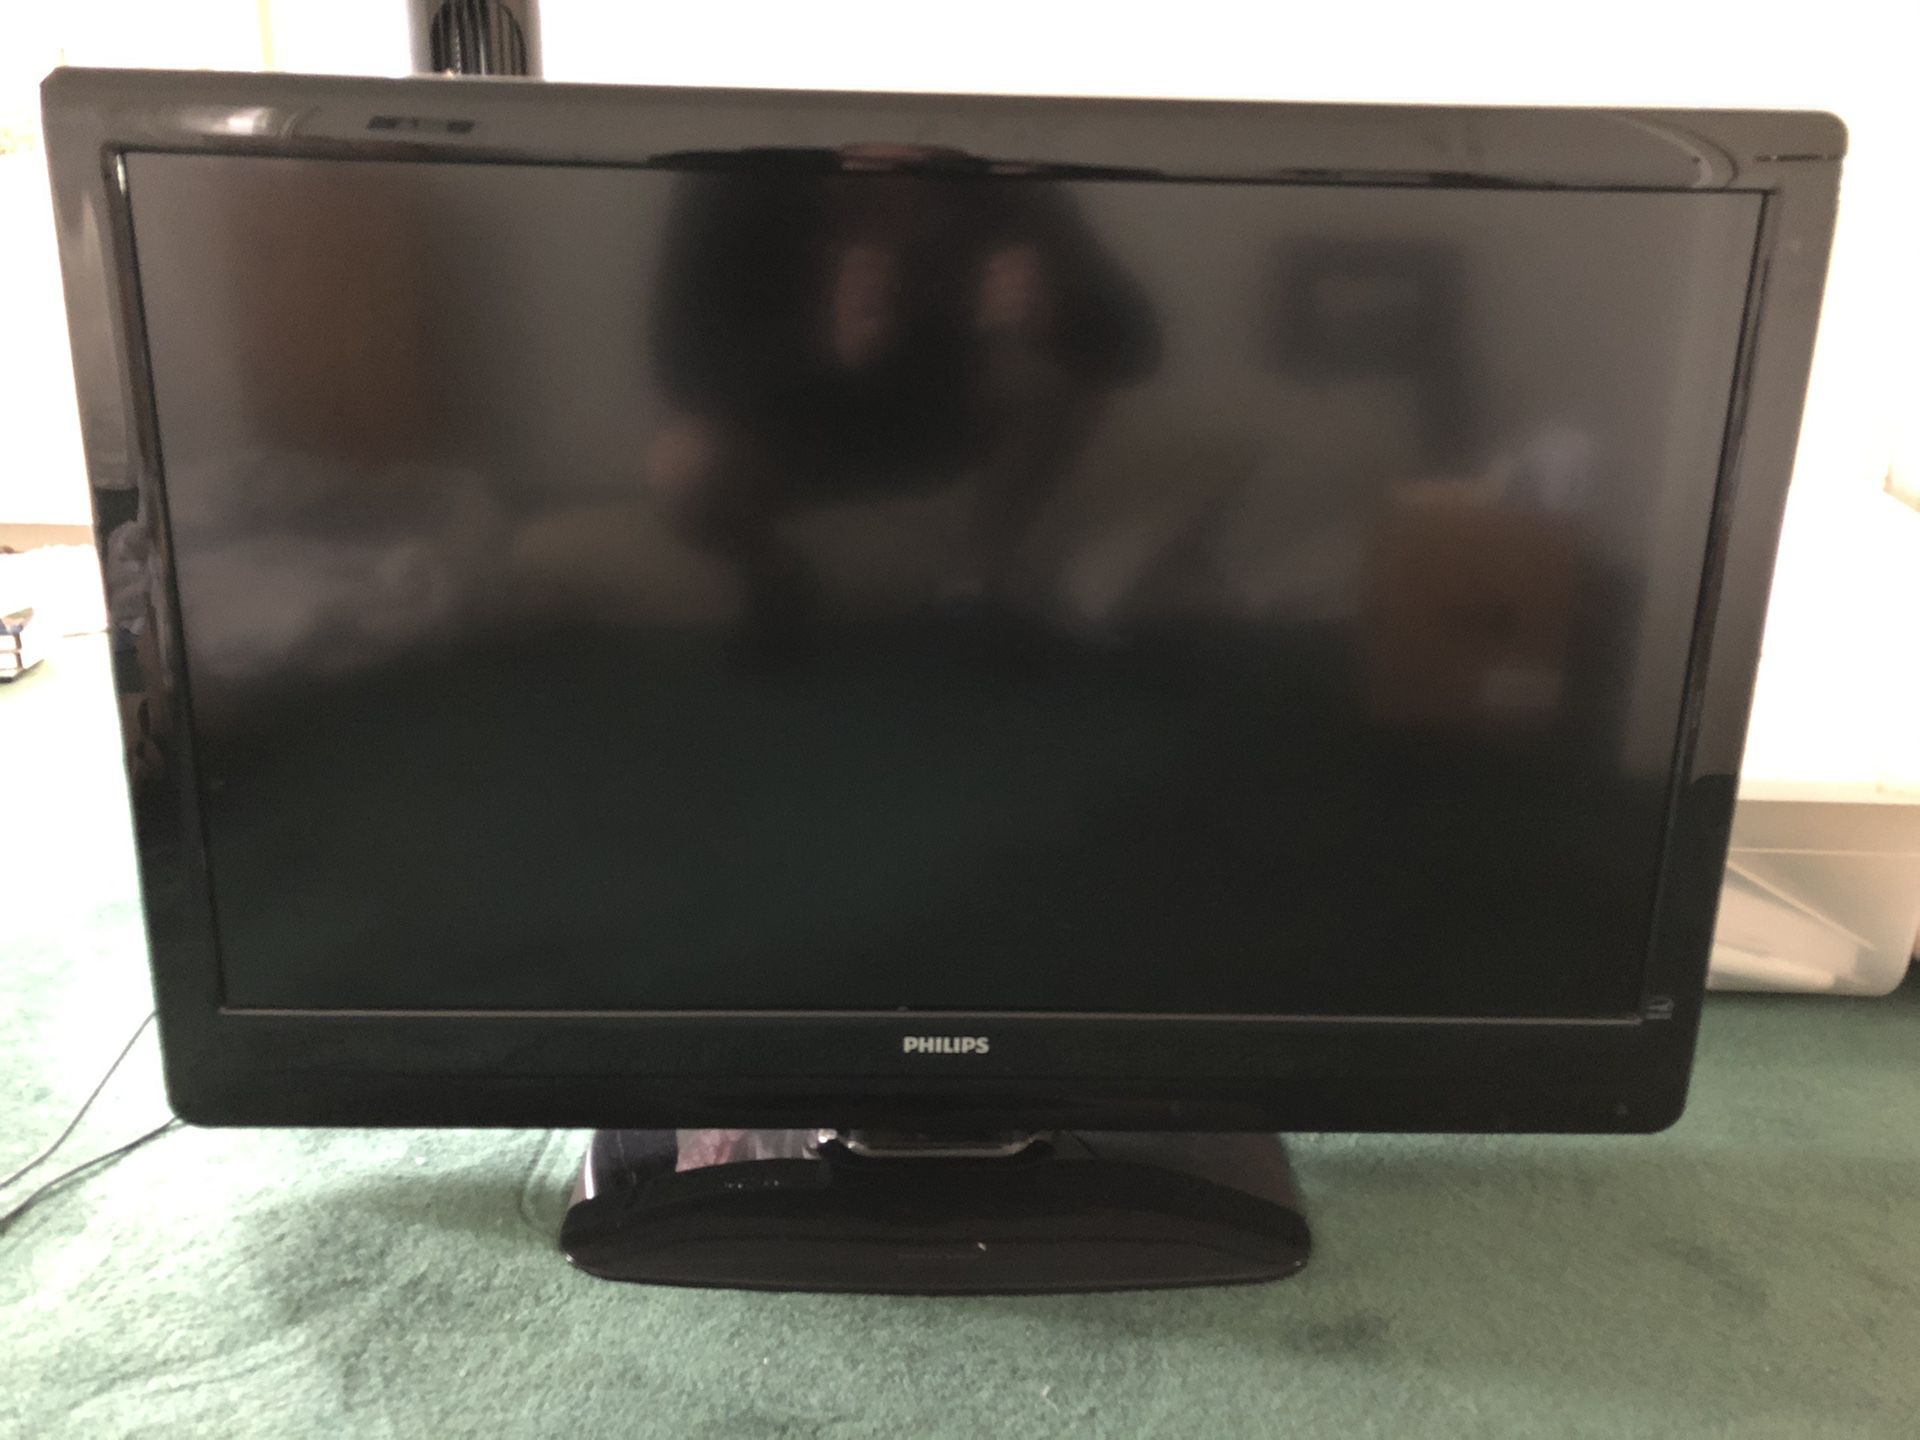 42” Panasonic flat screen TV